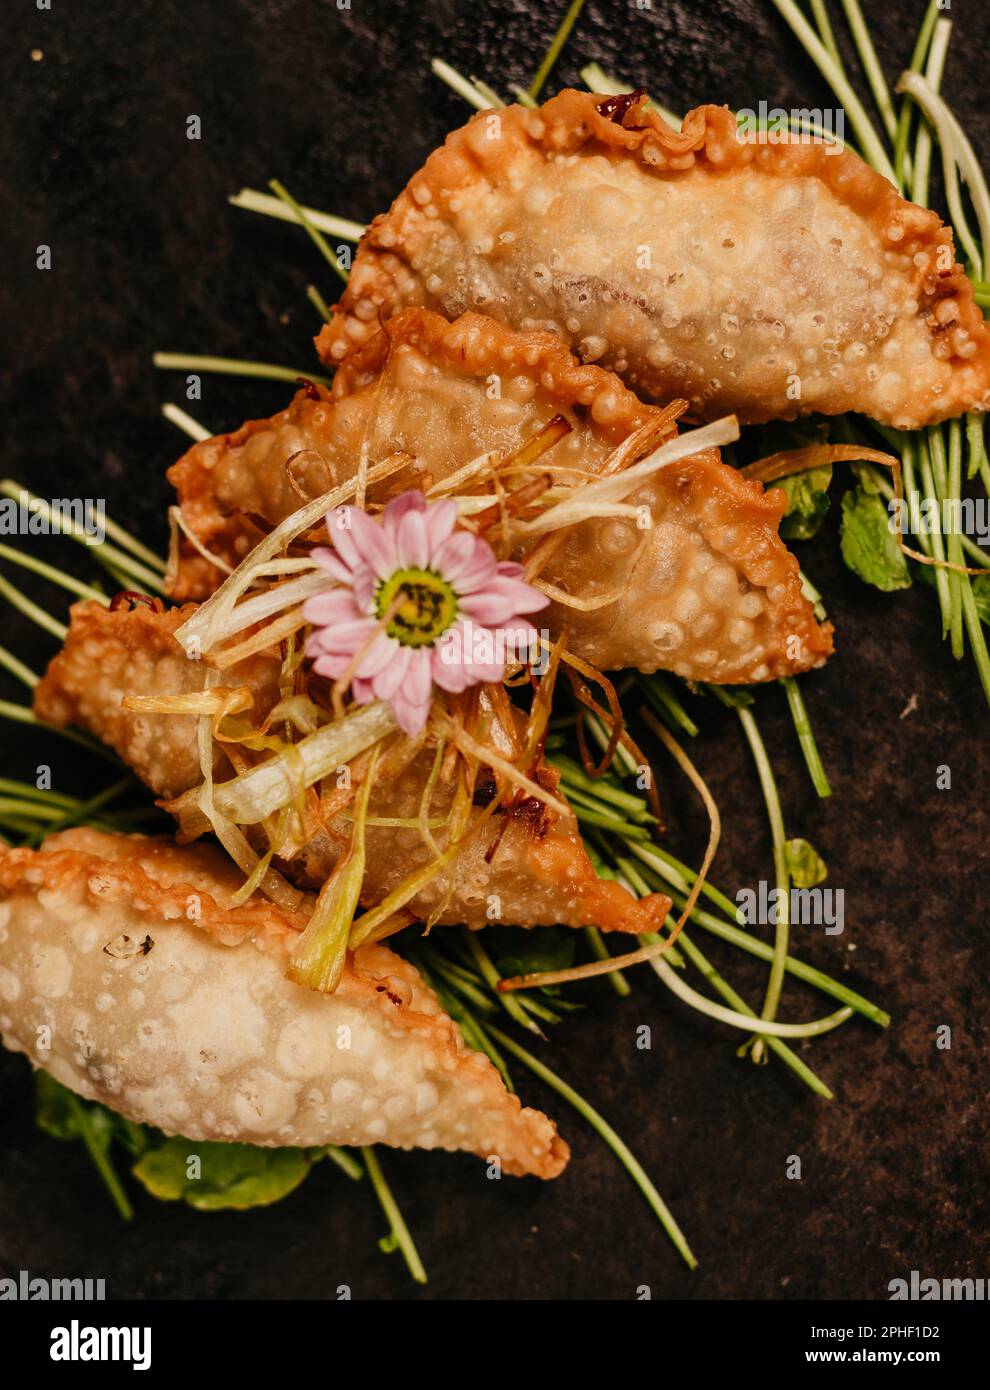 Ein Nahbild eines Tellers frittiertes Essen, garniert mit einer Blume Stockfoto